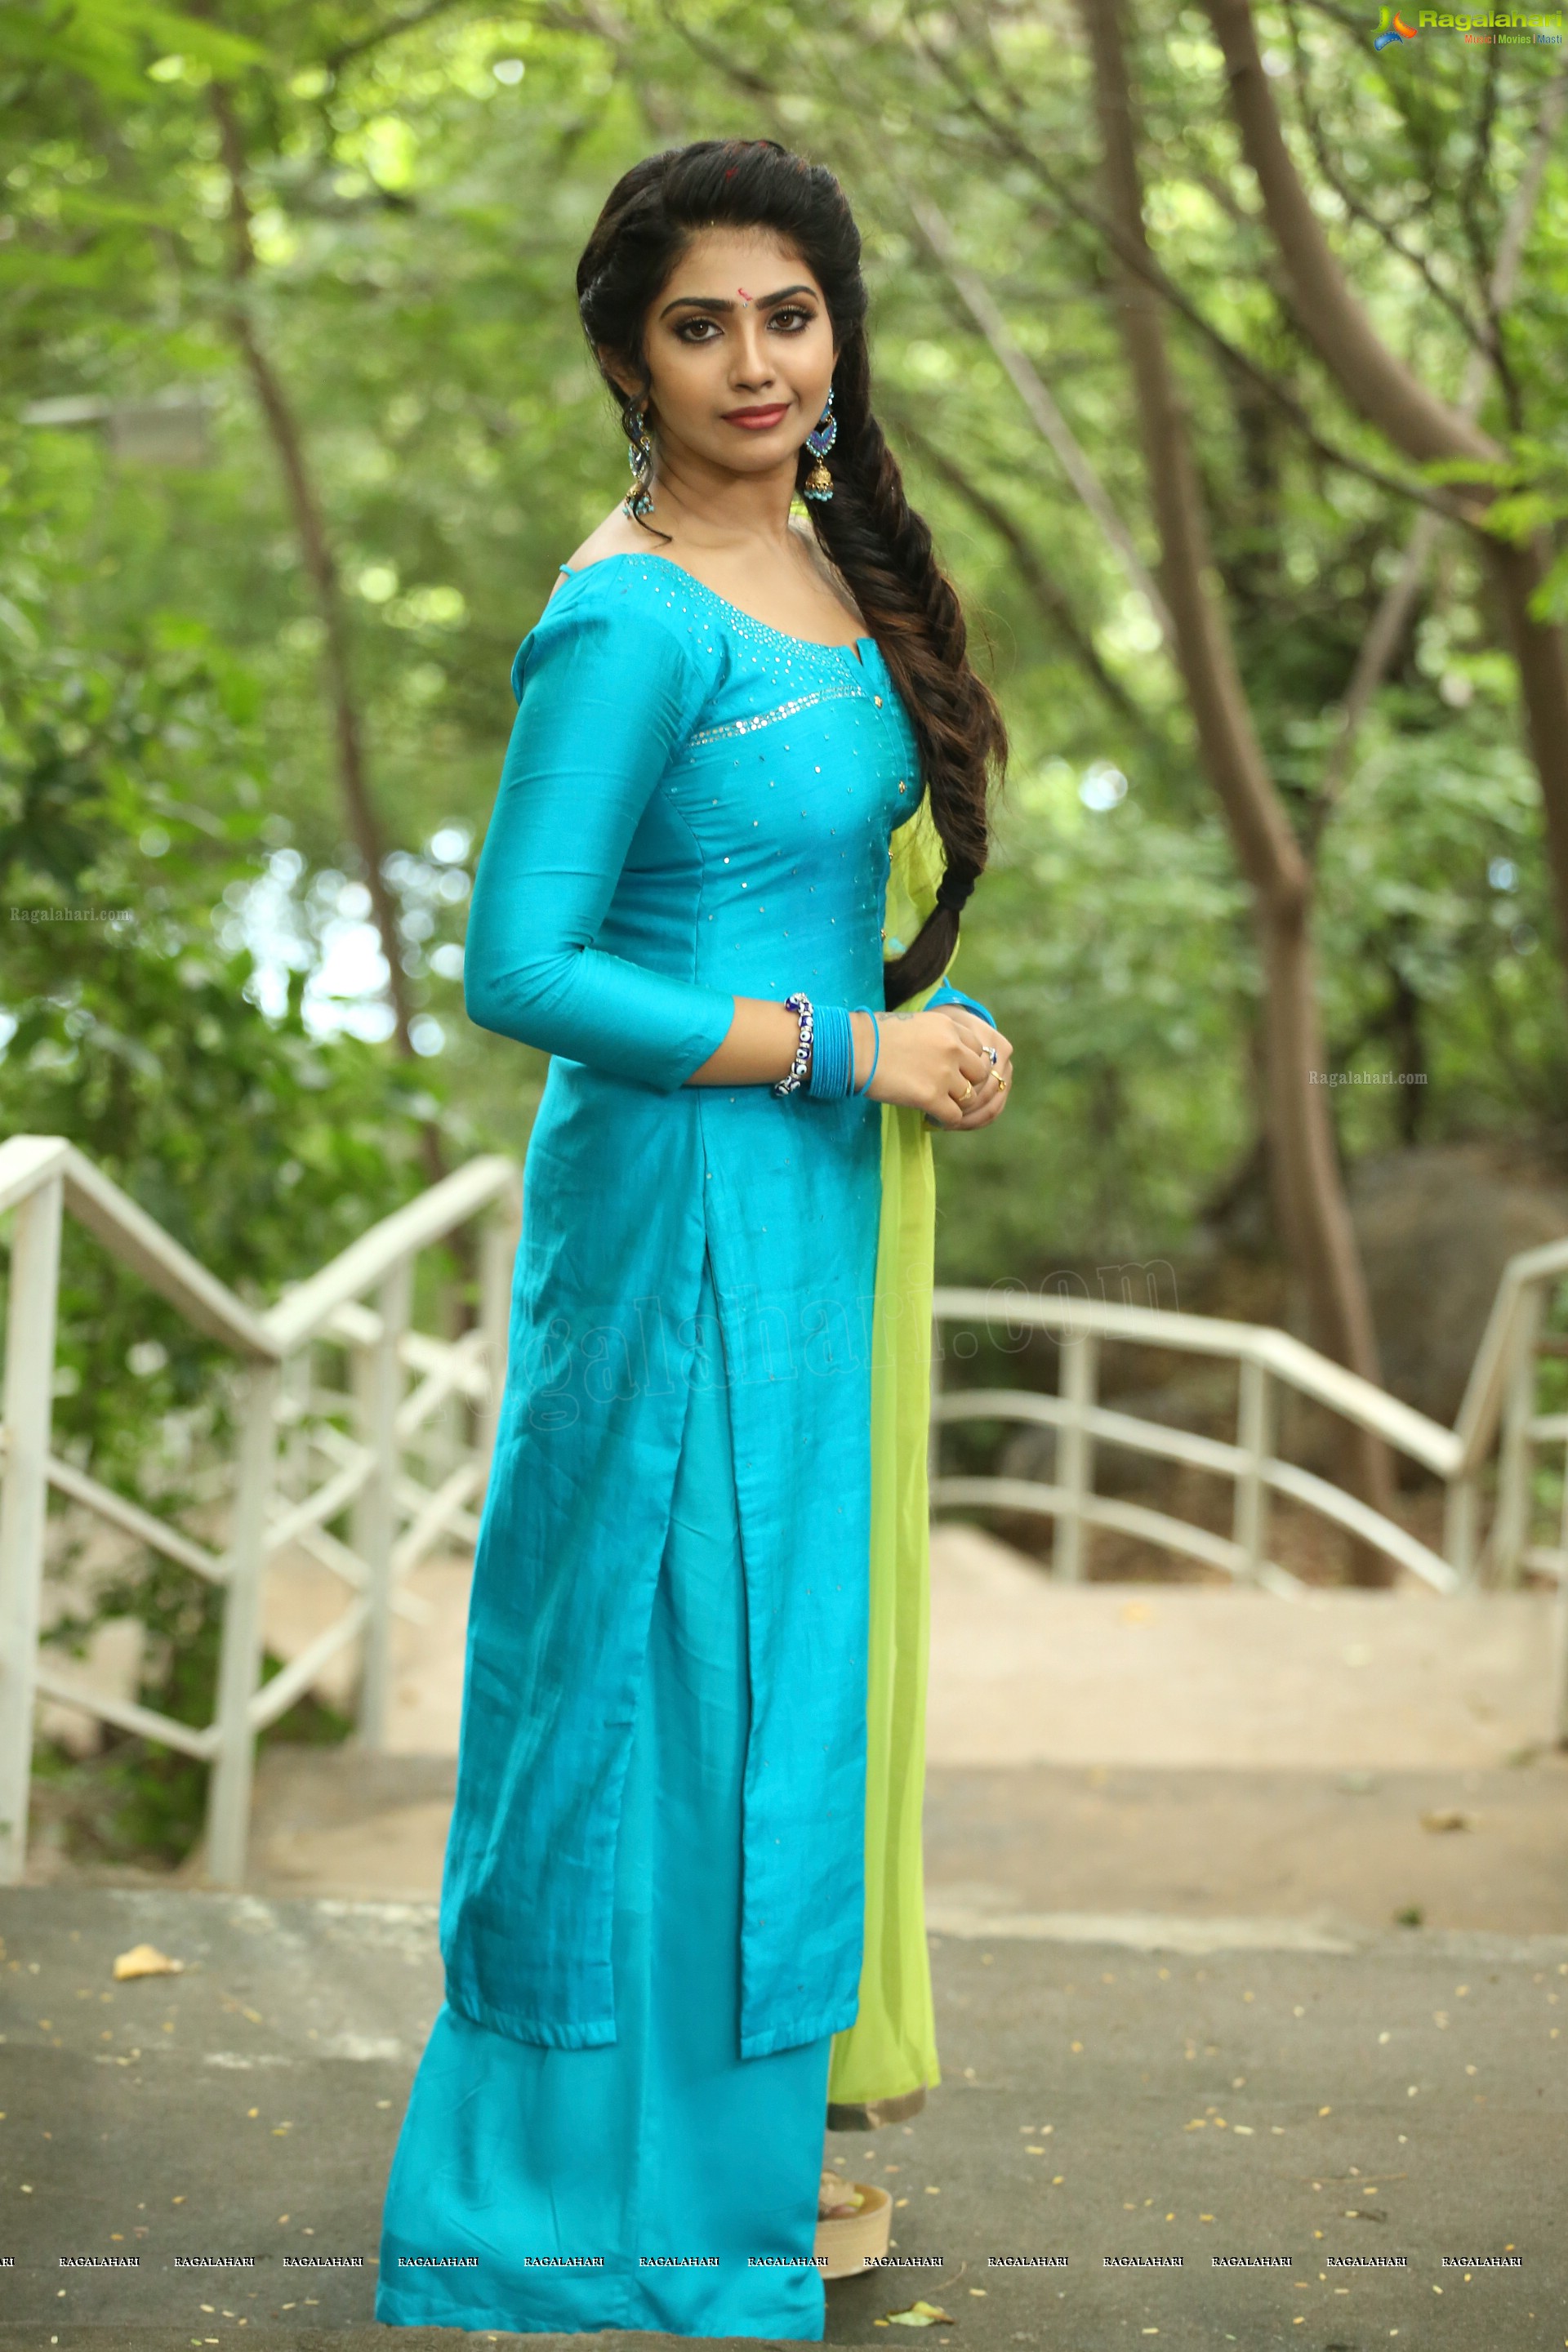 Varsha Viswanath at Andamaina Lokam Movie Pooja Ceremony, HD Photo Gallery